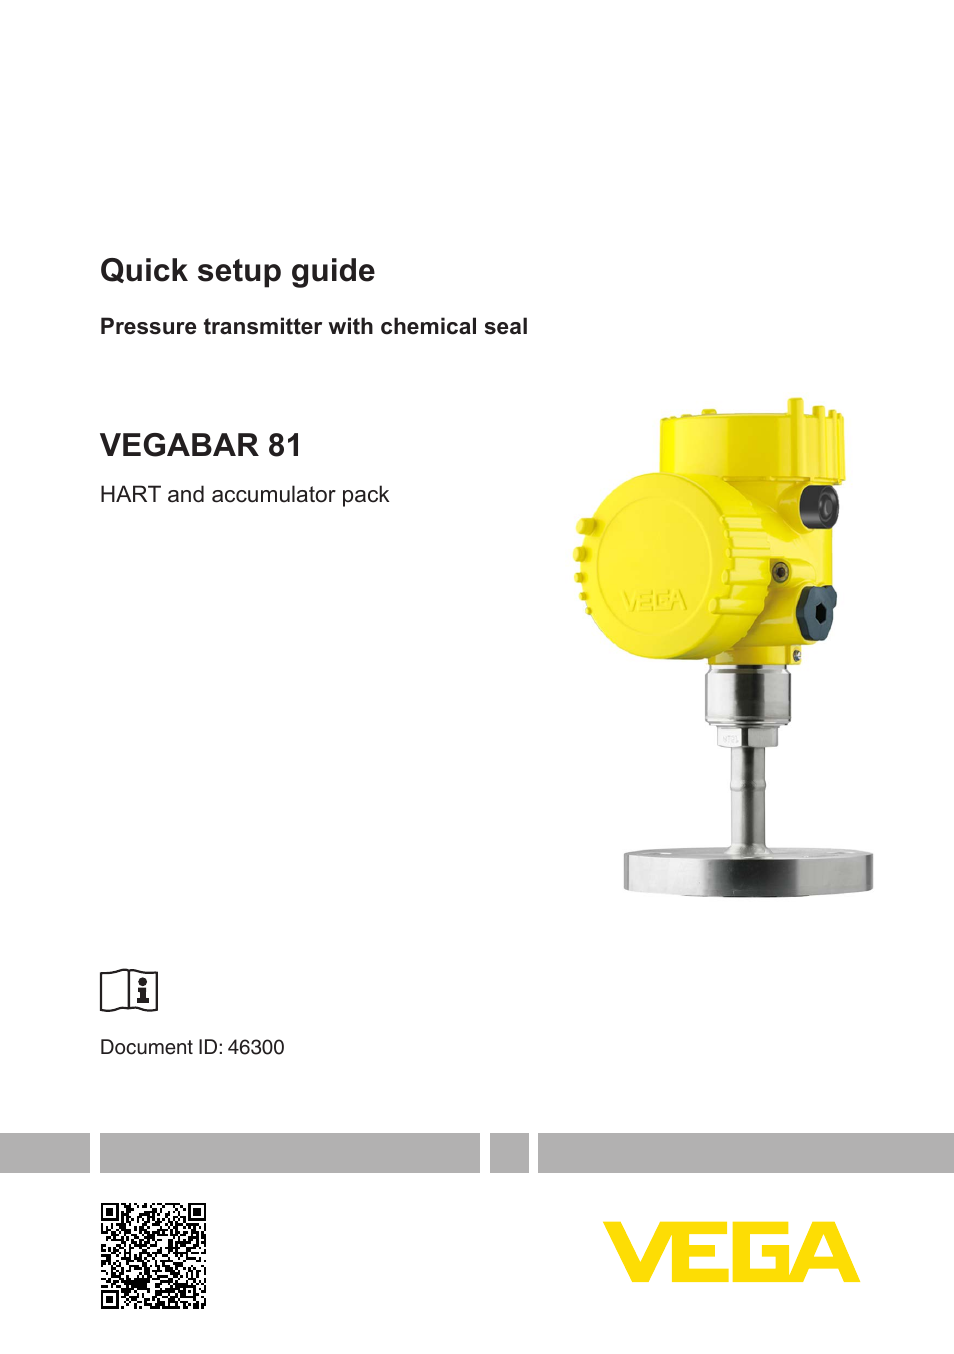 VEGABAR 81 HART and accumulator pack - Quick setup guide